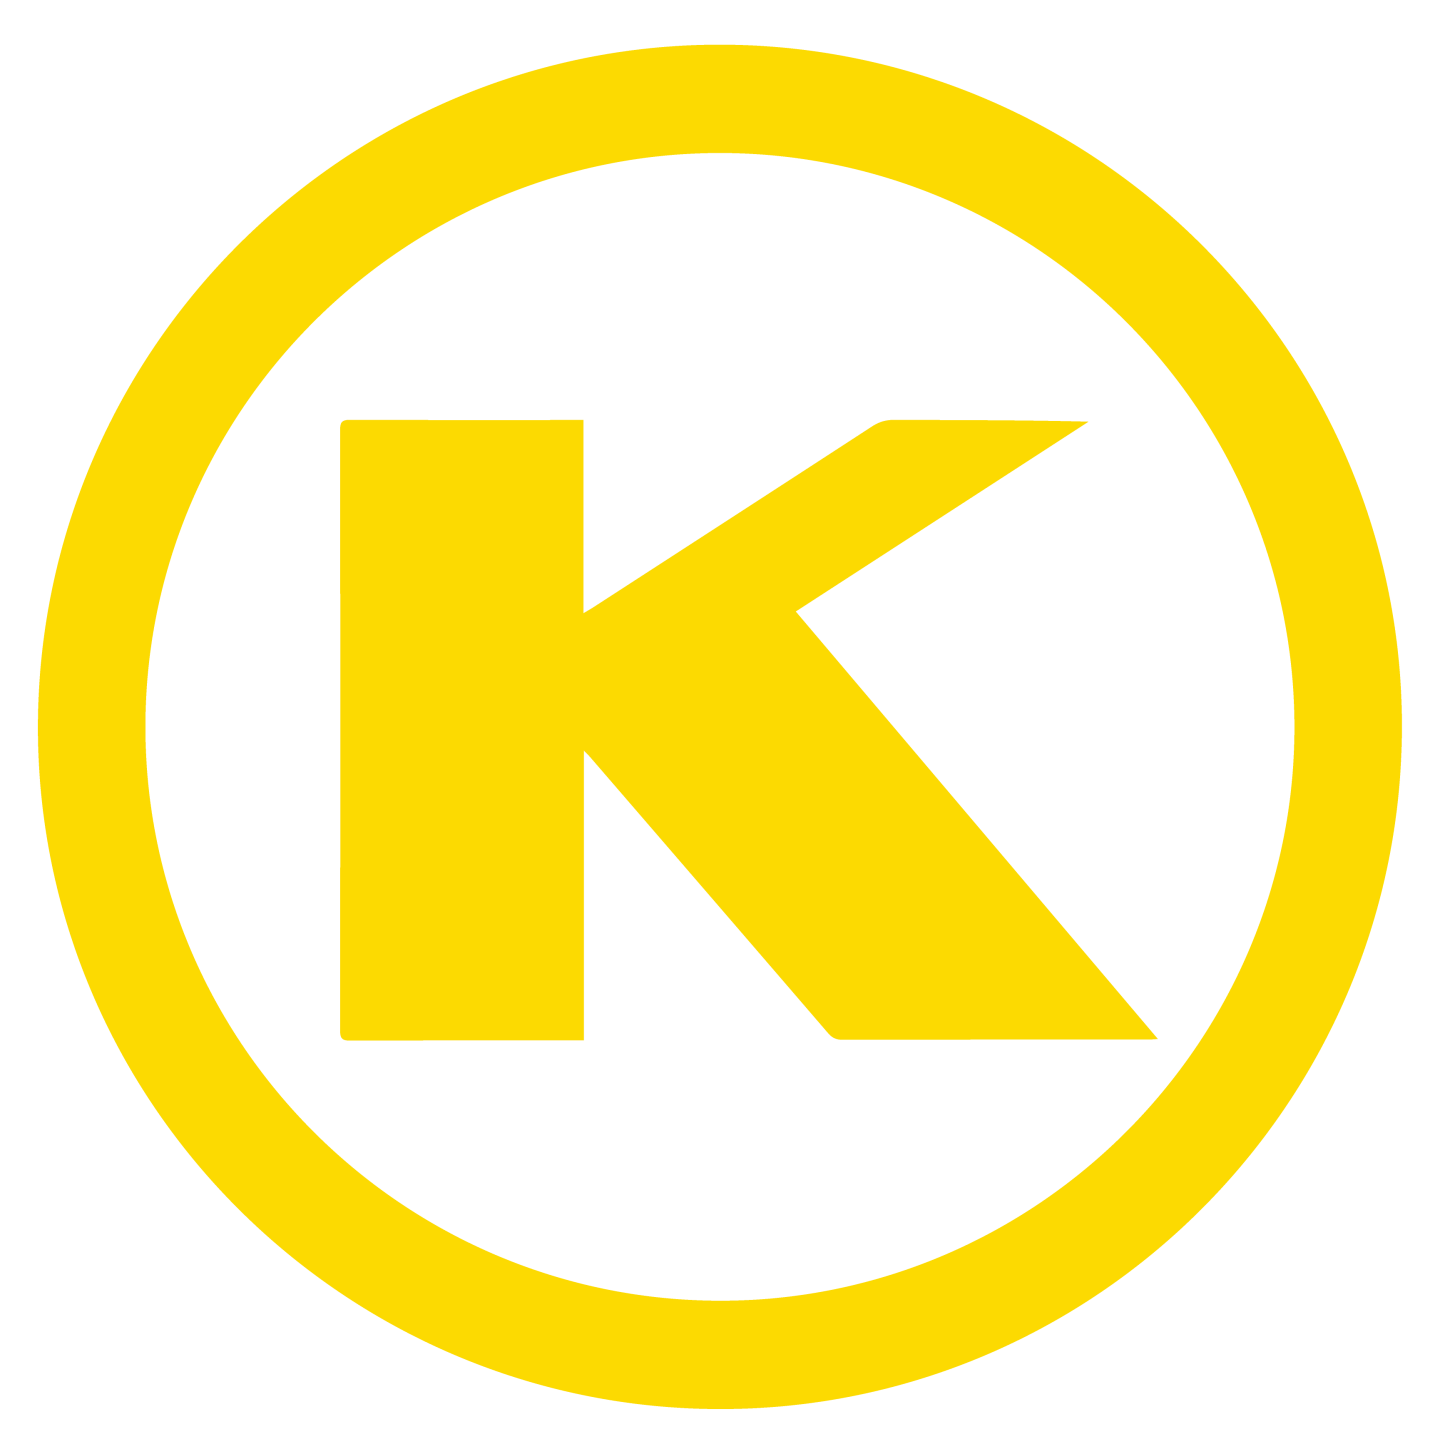 OK Kosher-logo DryPasta